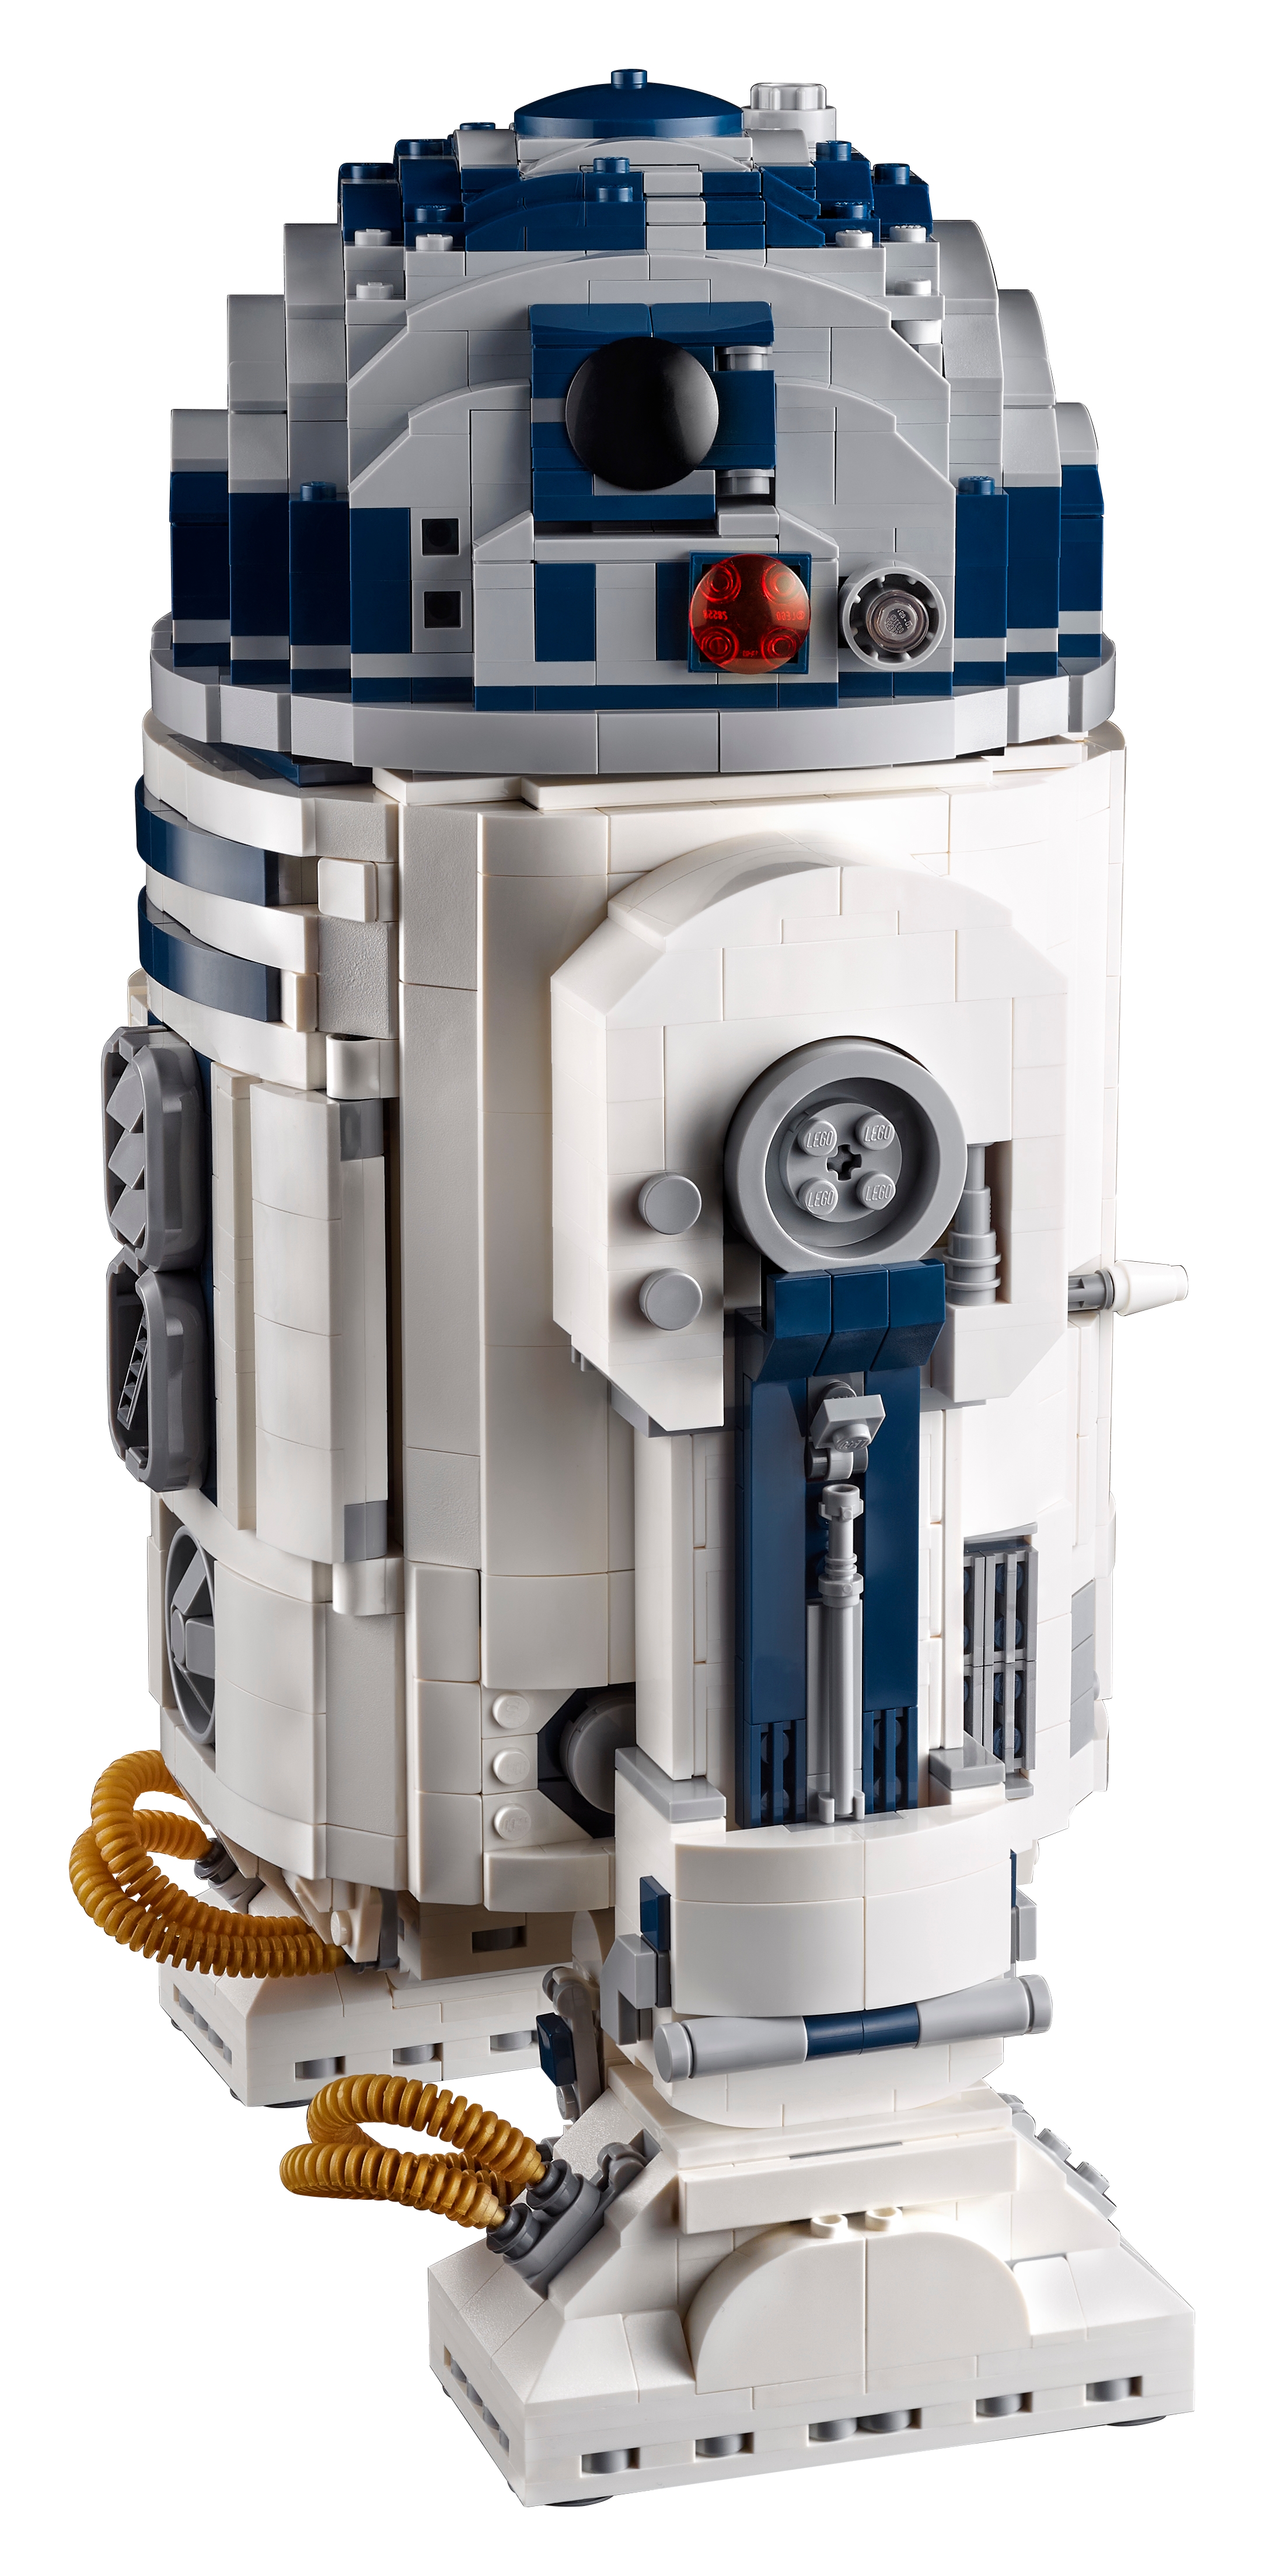 Lego - Star Wars R2-D2 75308